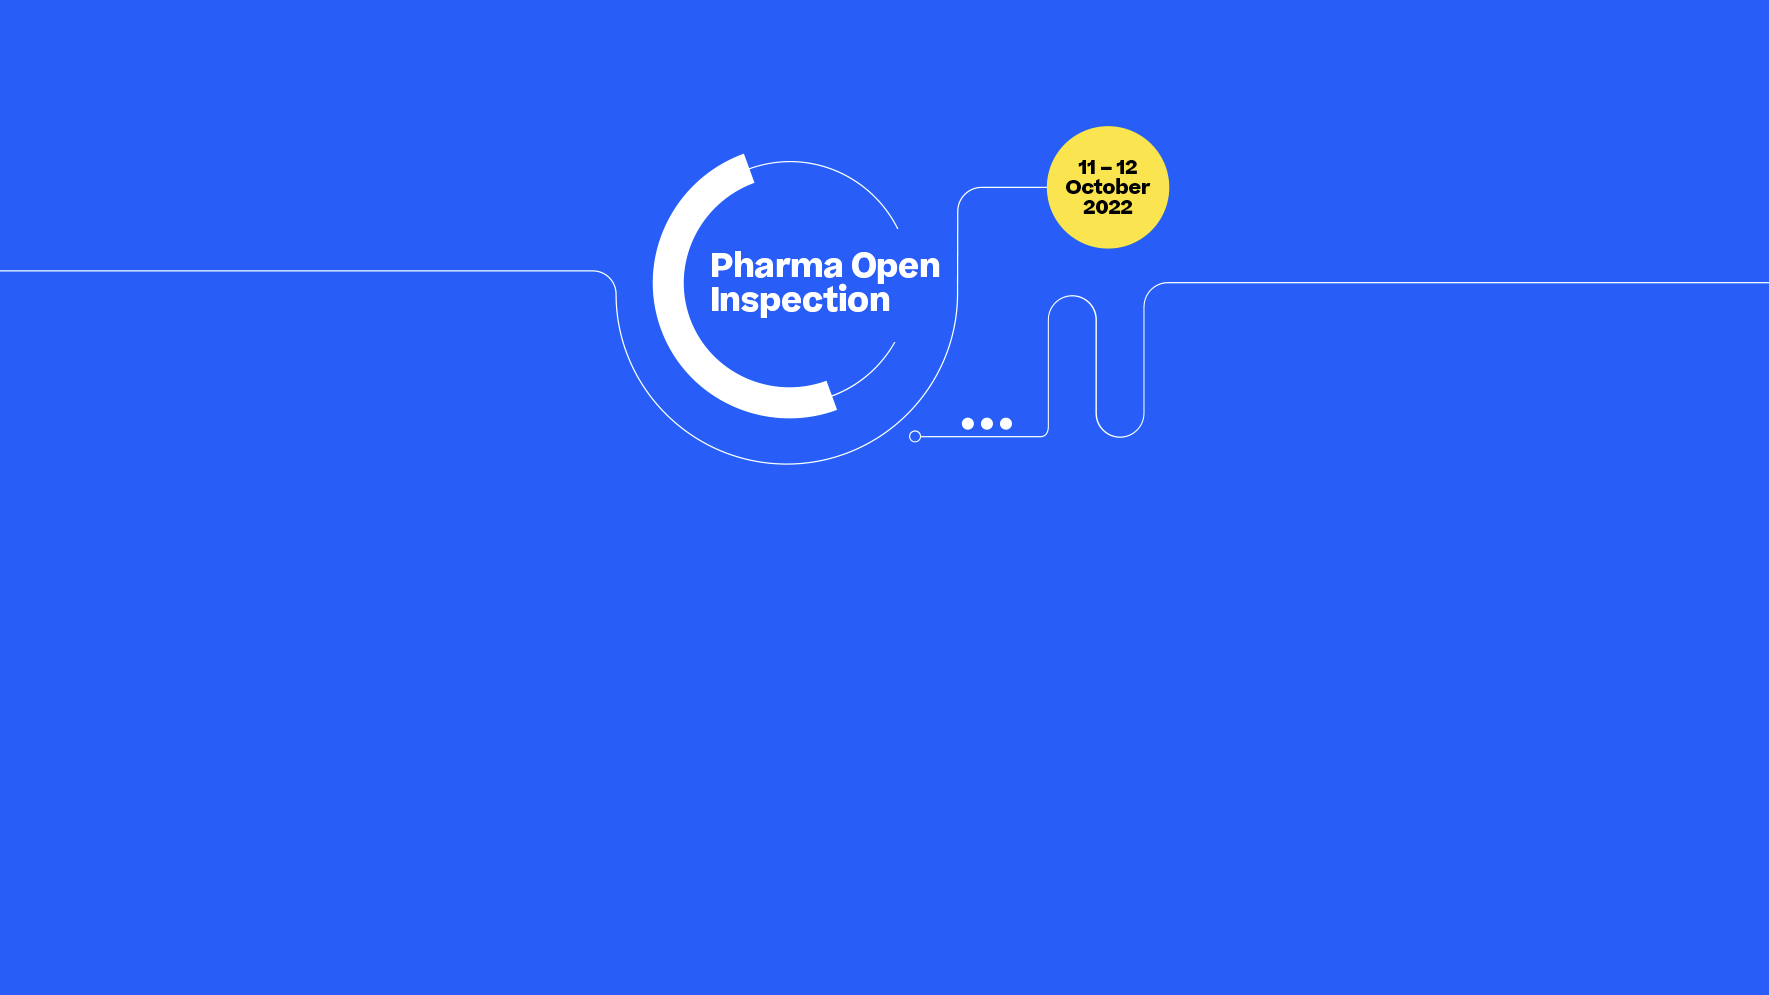 Pharma Open Inspection